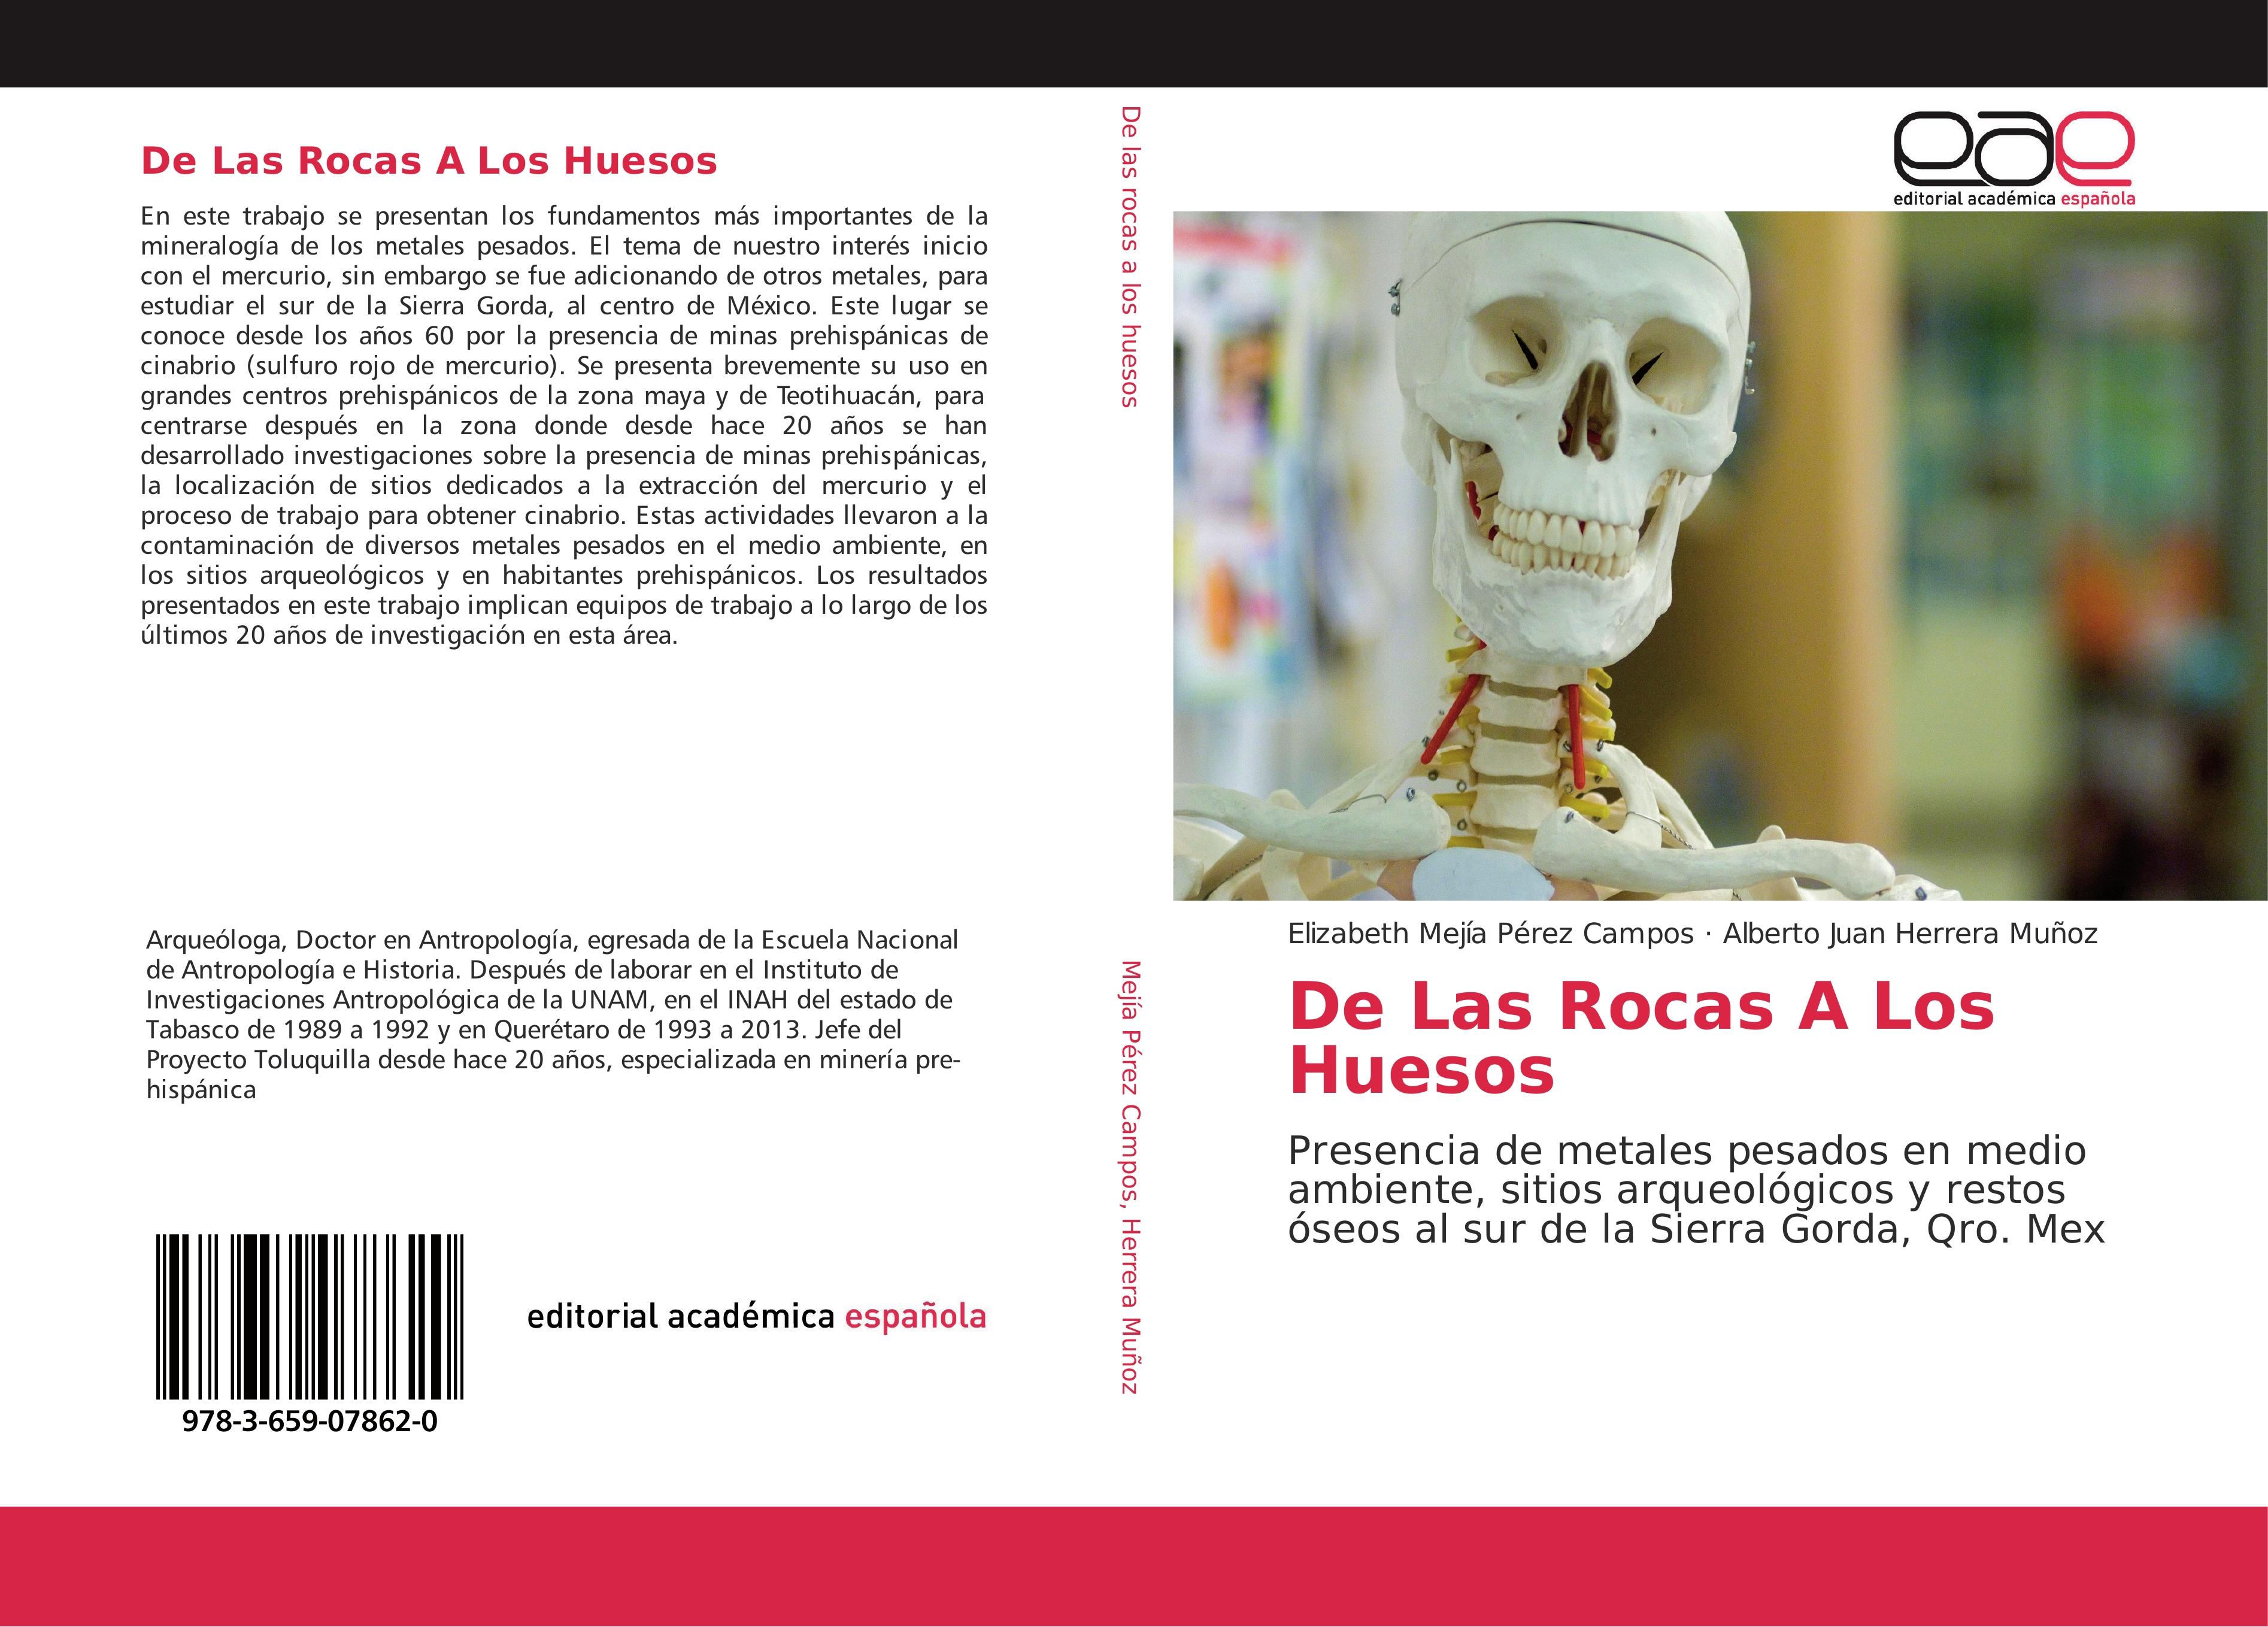 De Las Rocas A Los Huesos - Elizabeth Mejía Pérez Campos Alberto Juan Herrera Muñoz